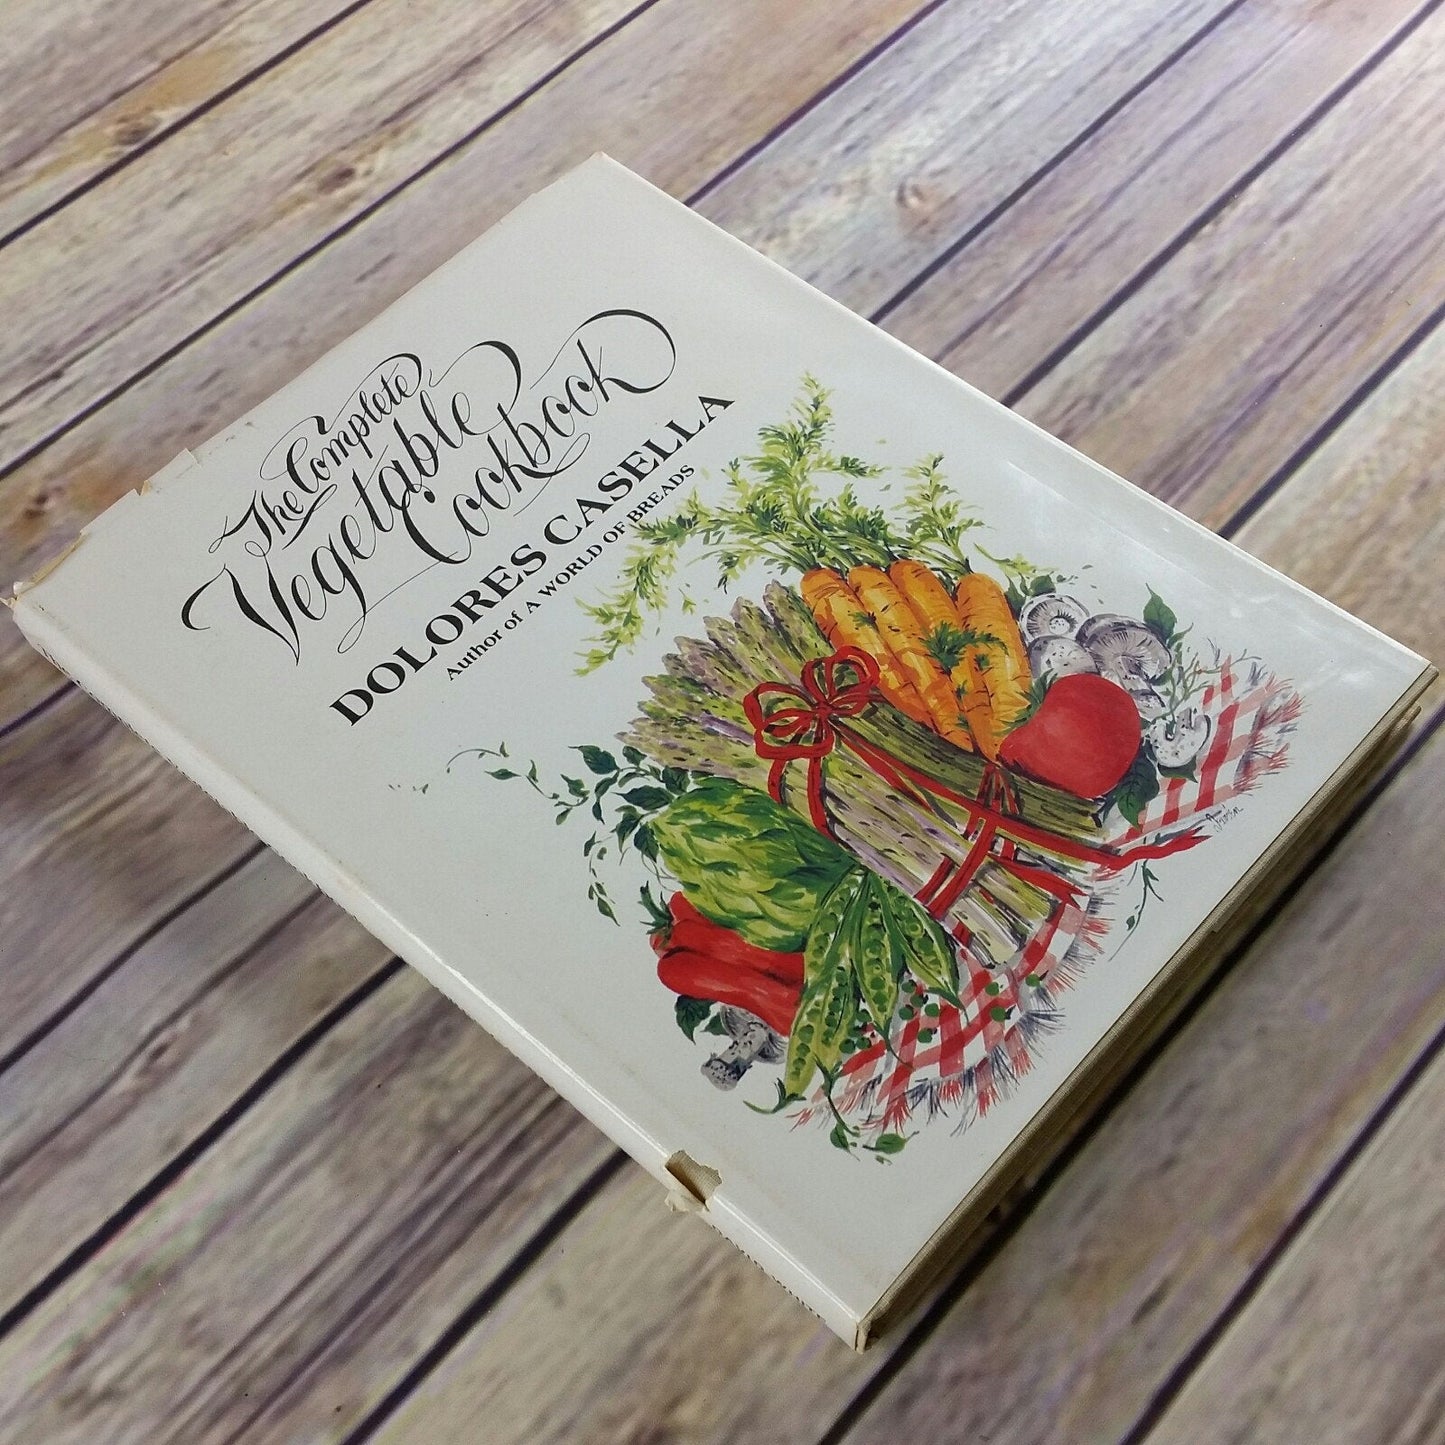 Vintage Cookbook The Complete Vegetable Cookbook Dolores Casella 1983 Hardcover Dust Jacket Vegetarian Recipes